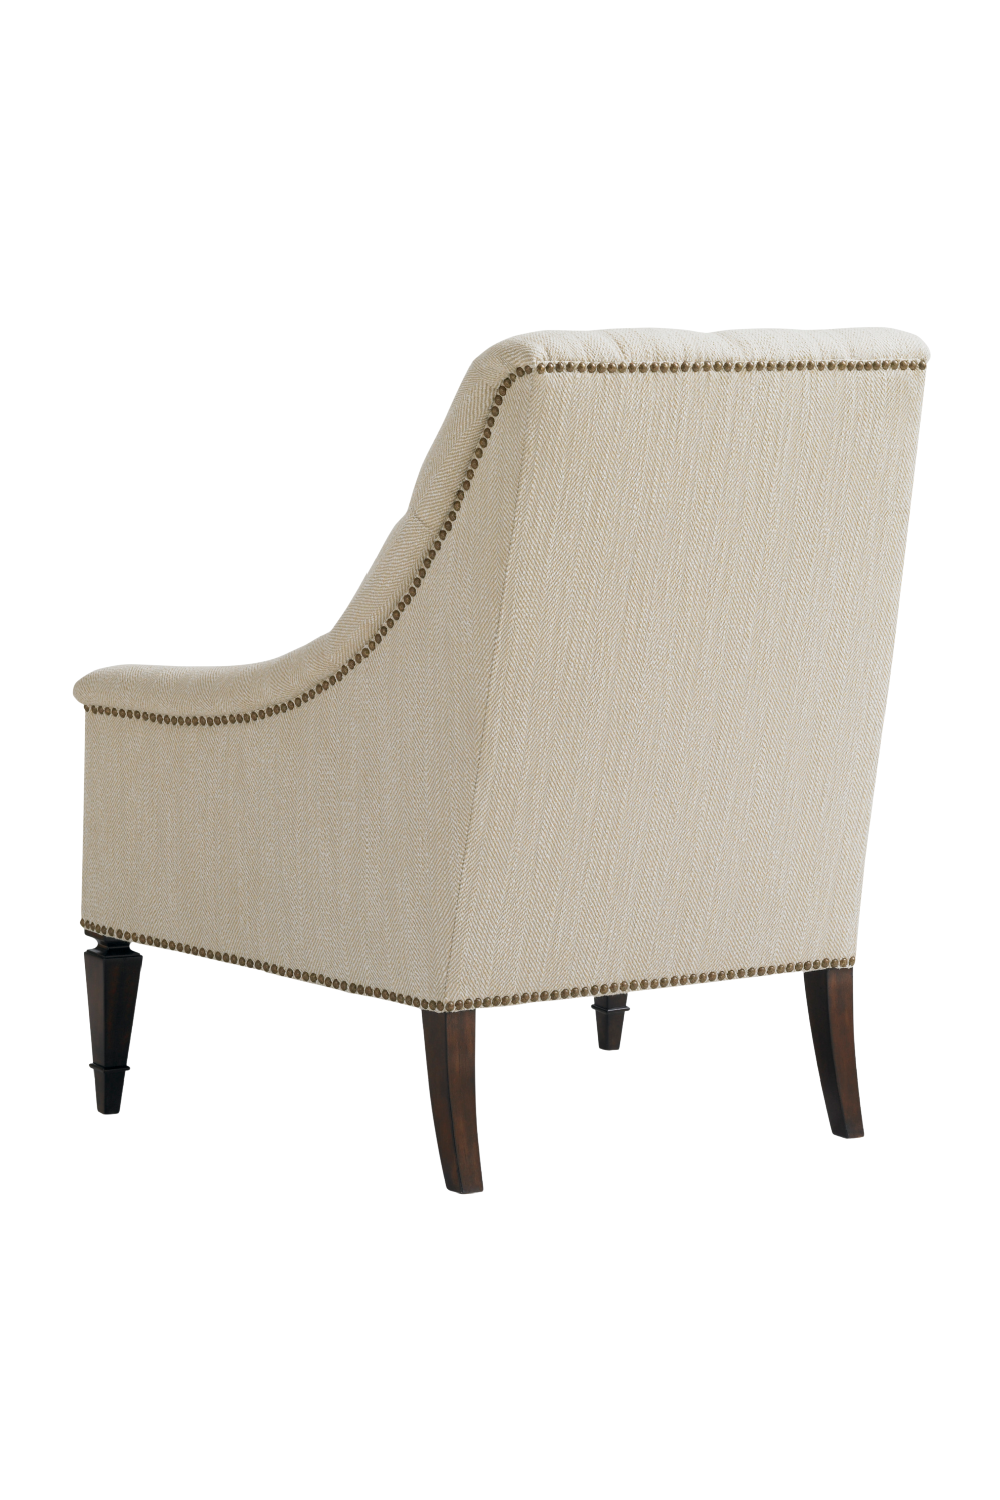 Tufted Lounge Chair | Caracole Classic Elegance | Oroa.com